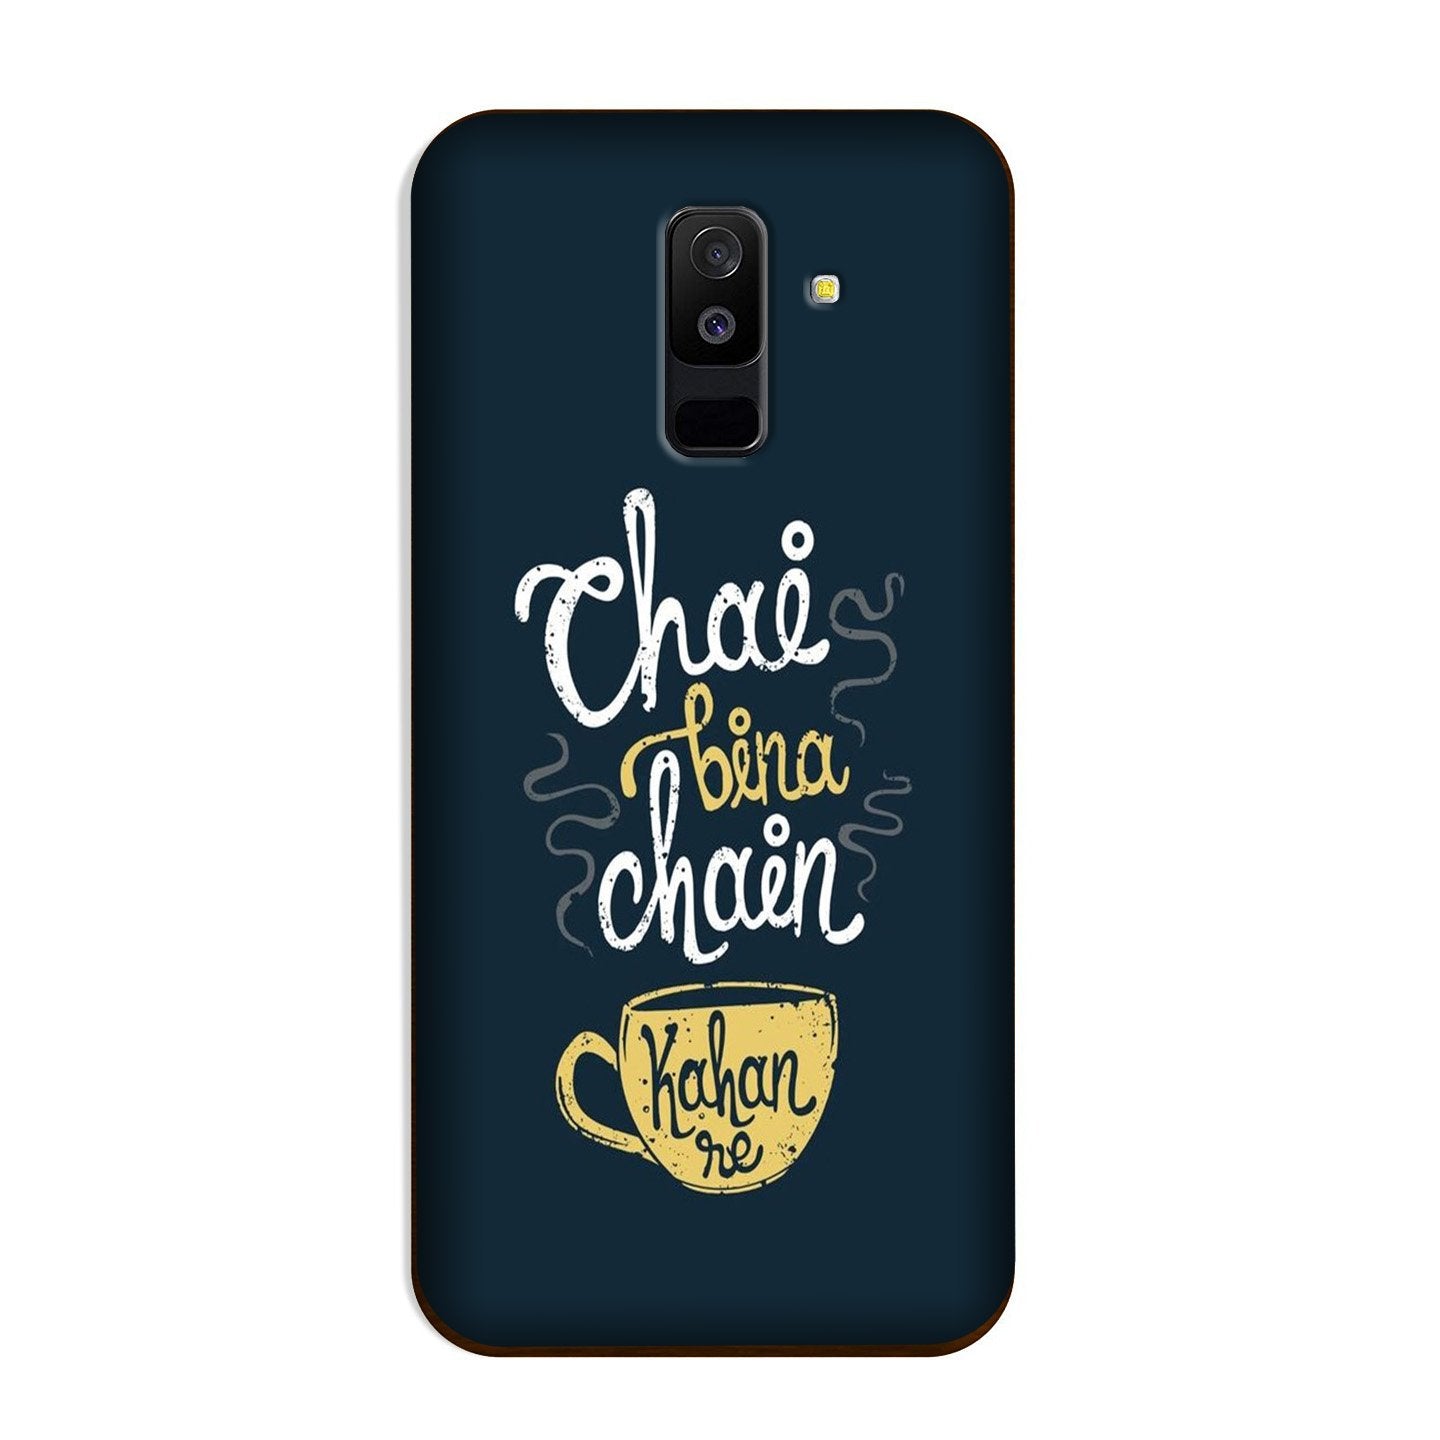 Chai Bina Chain Kahan Case for Galaxy A6 Plus  (Design - 144)